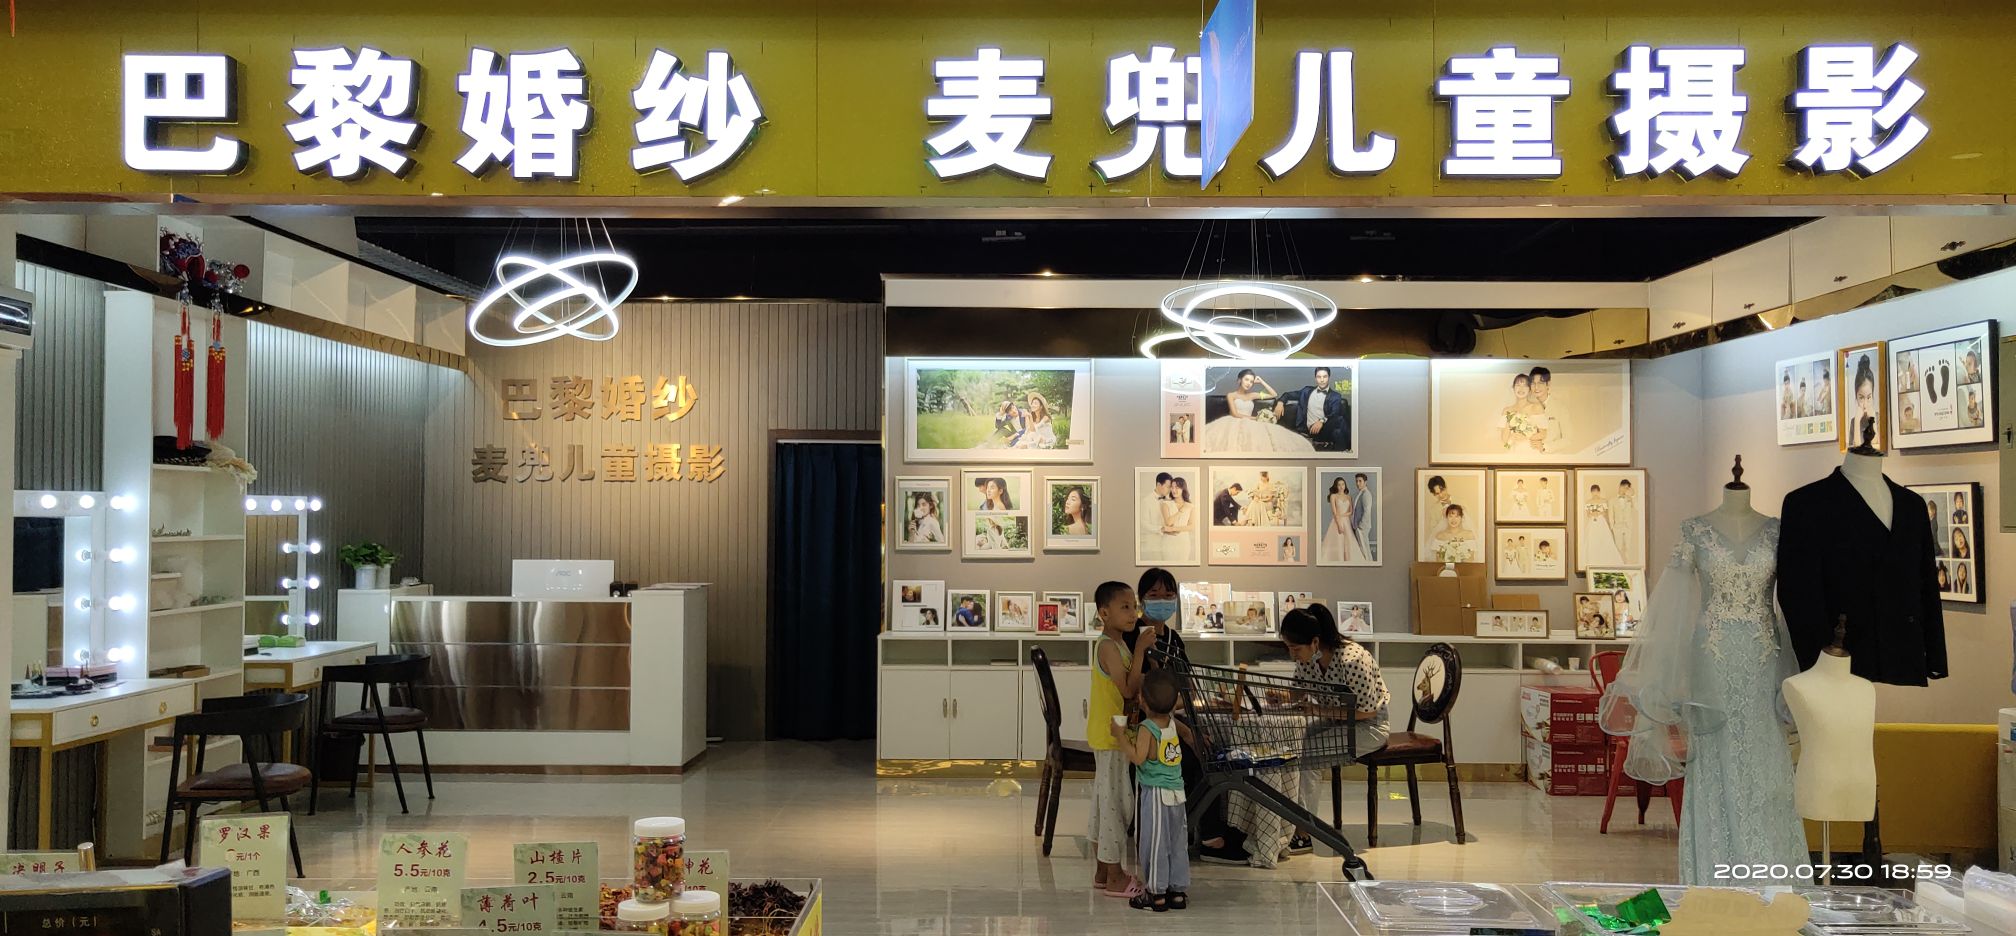 南京 古装 儿童 摄影 西厢月 古今_儿童古装摄影店名字_儿童摄影店